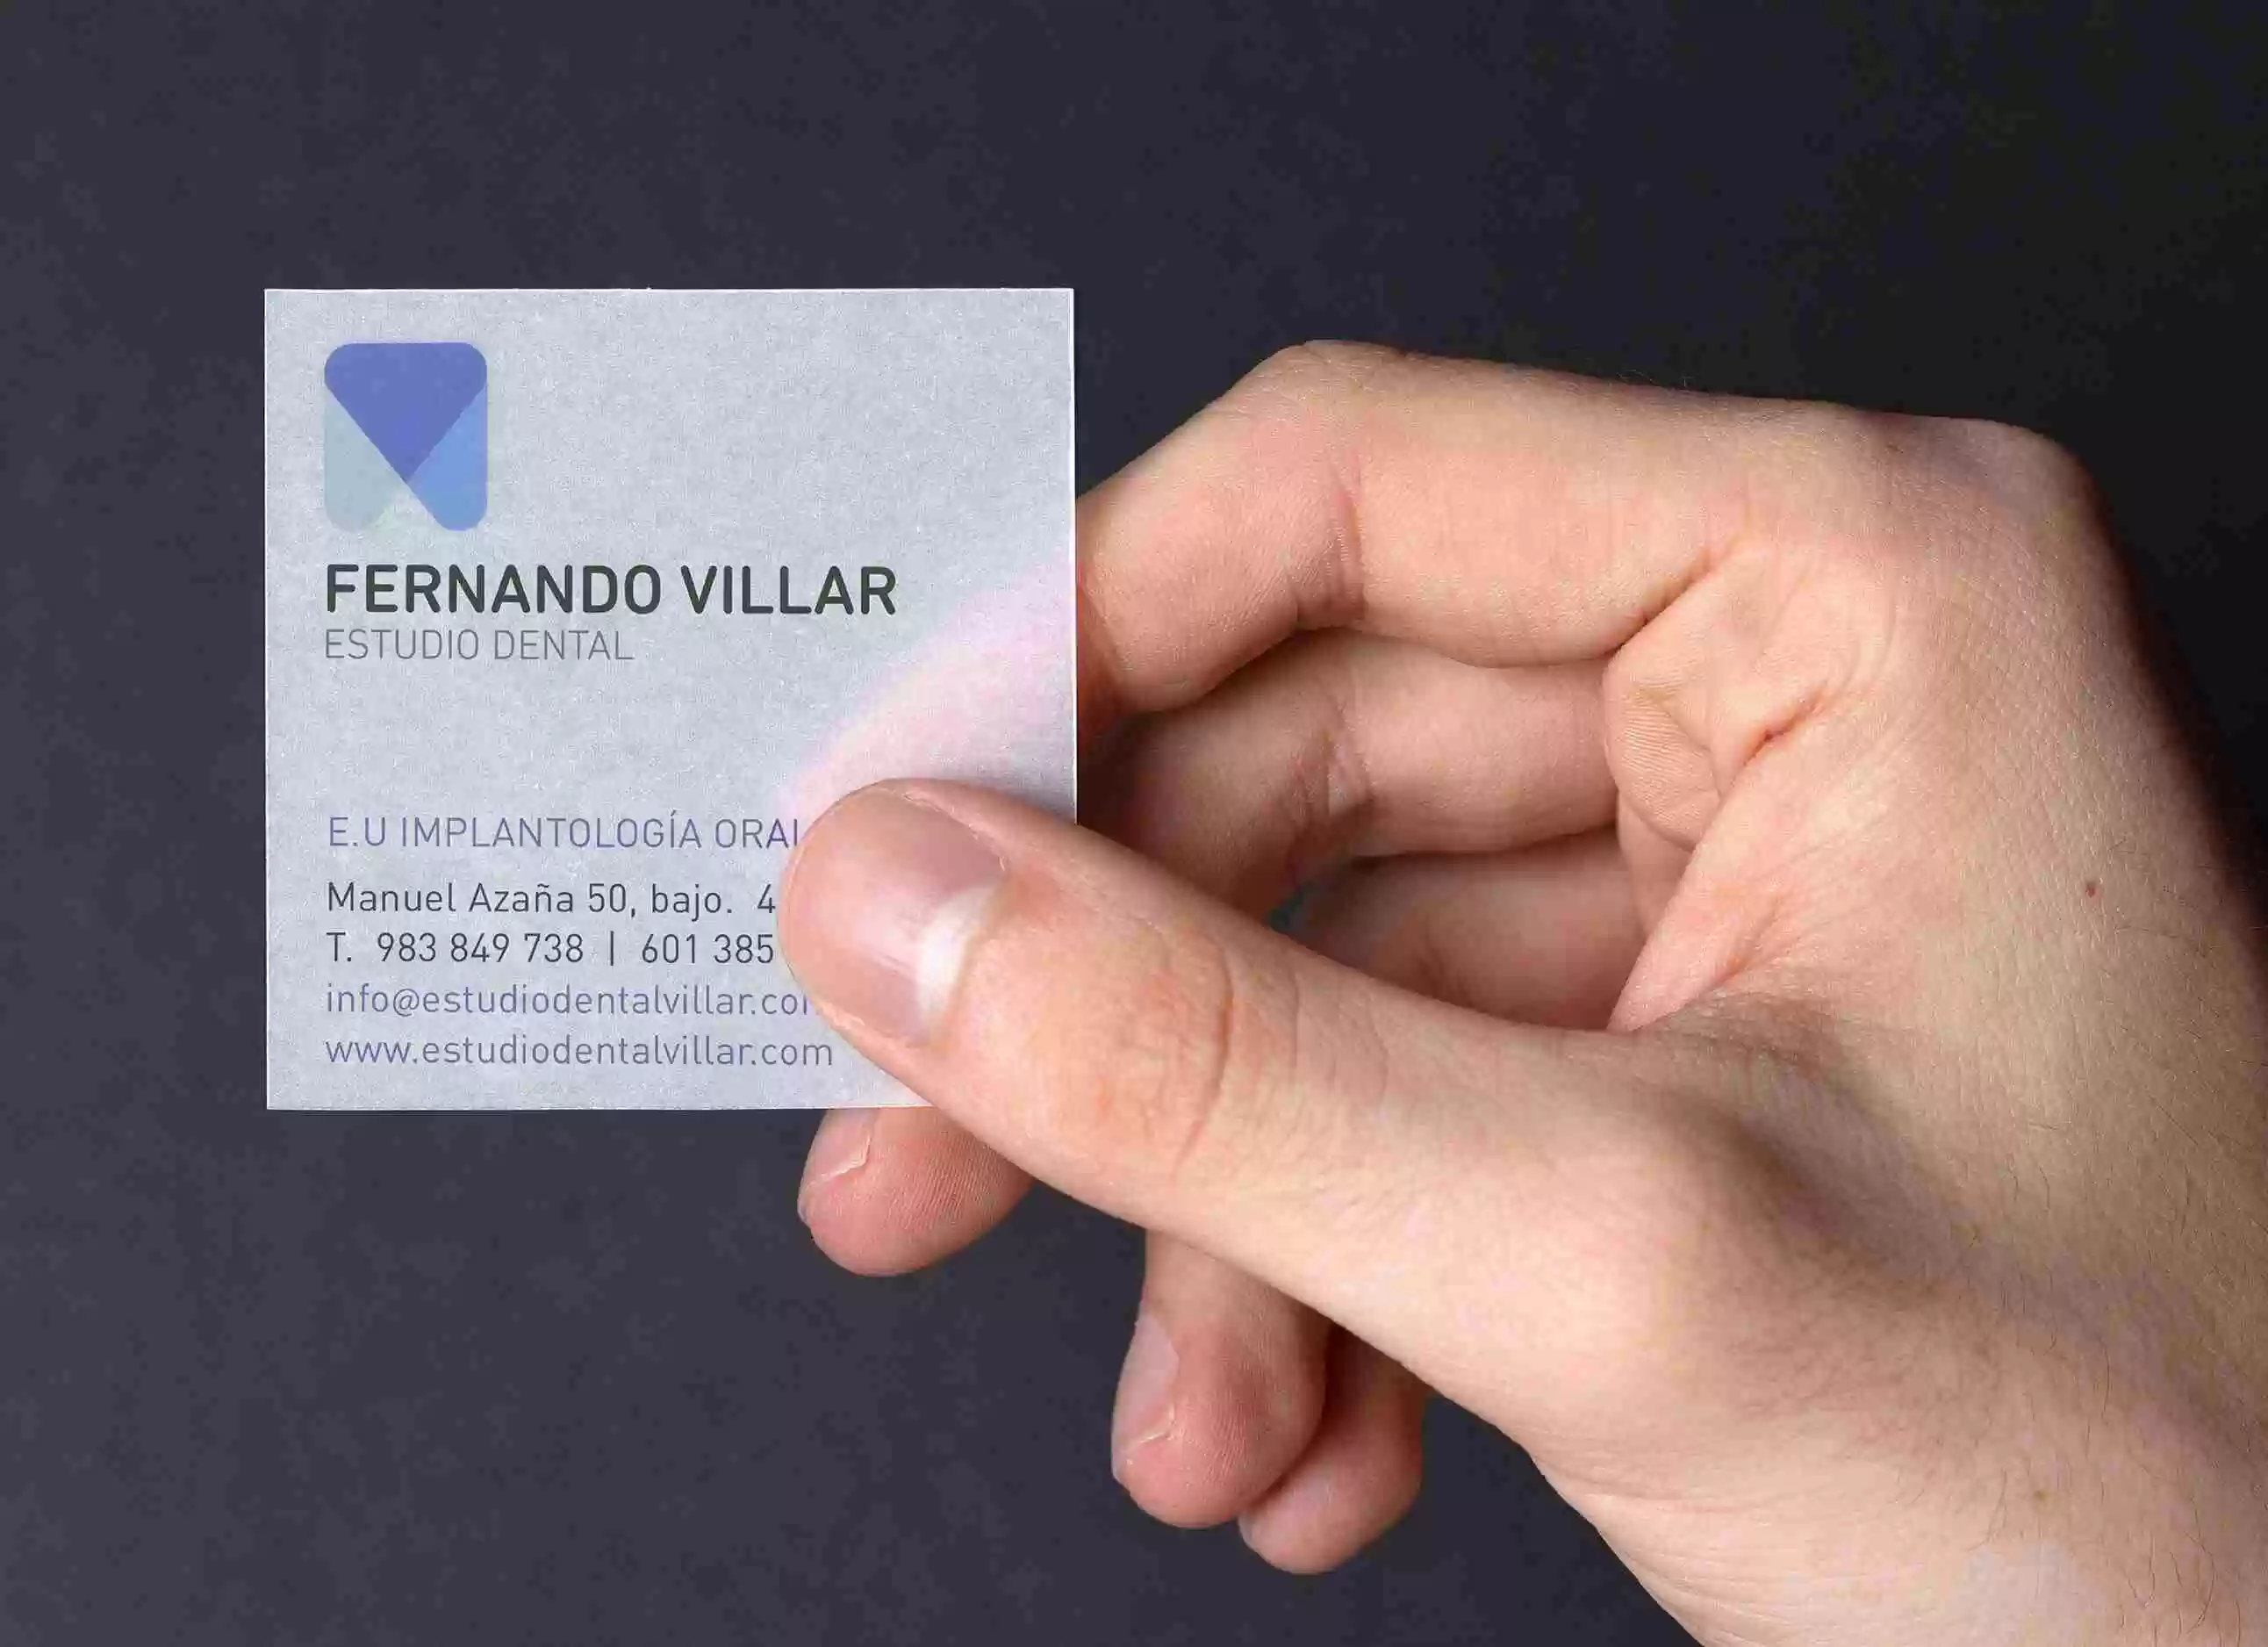 Fernando Villar. Estudio dental